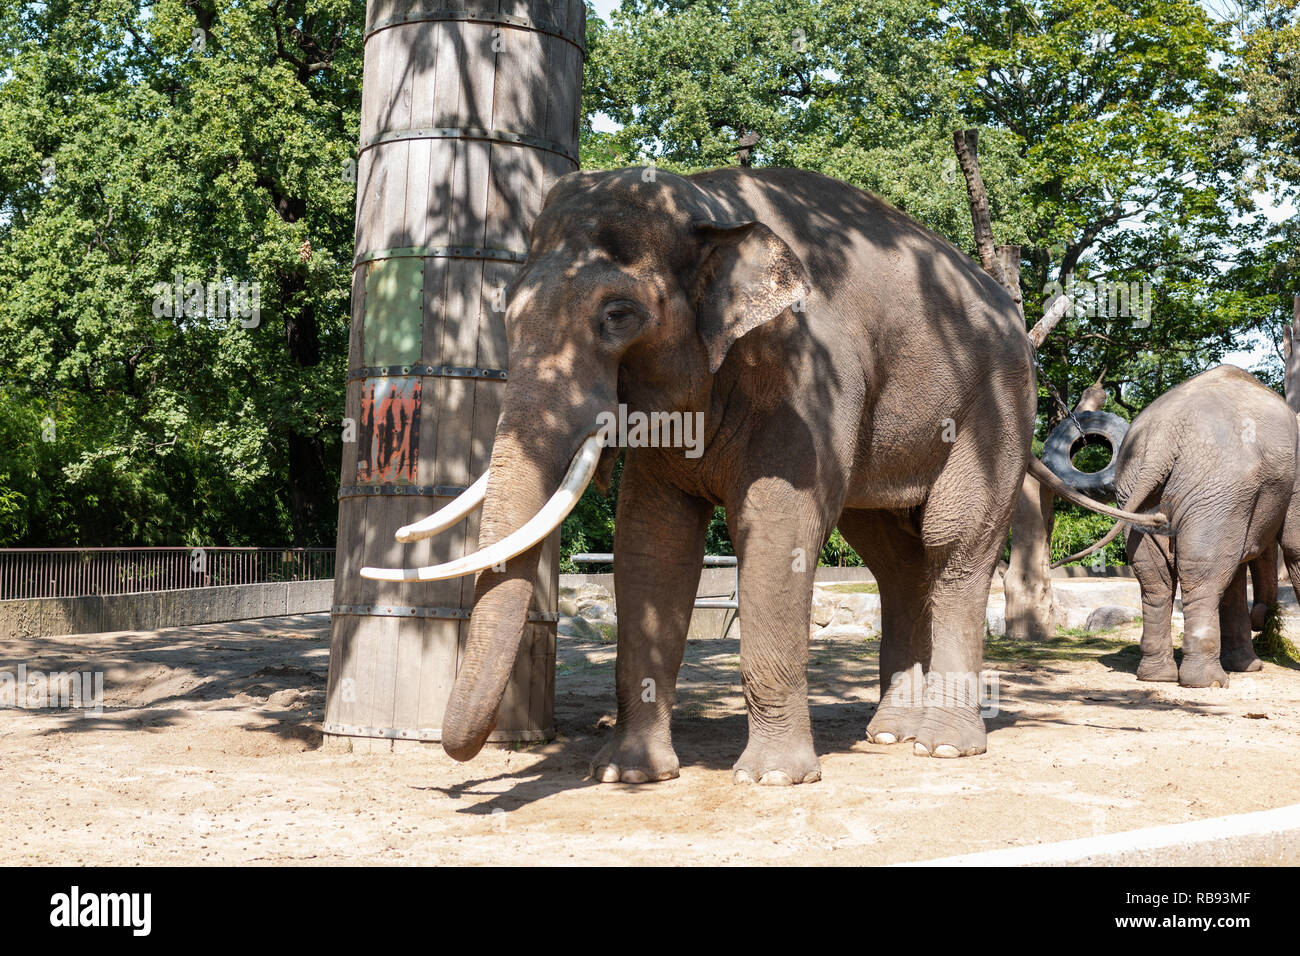 Elephants at Berlin zoo, Germany Stock Photo